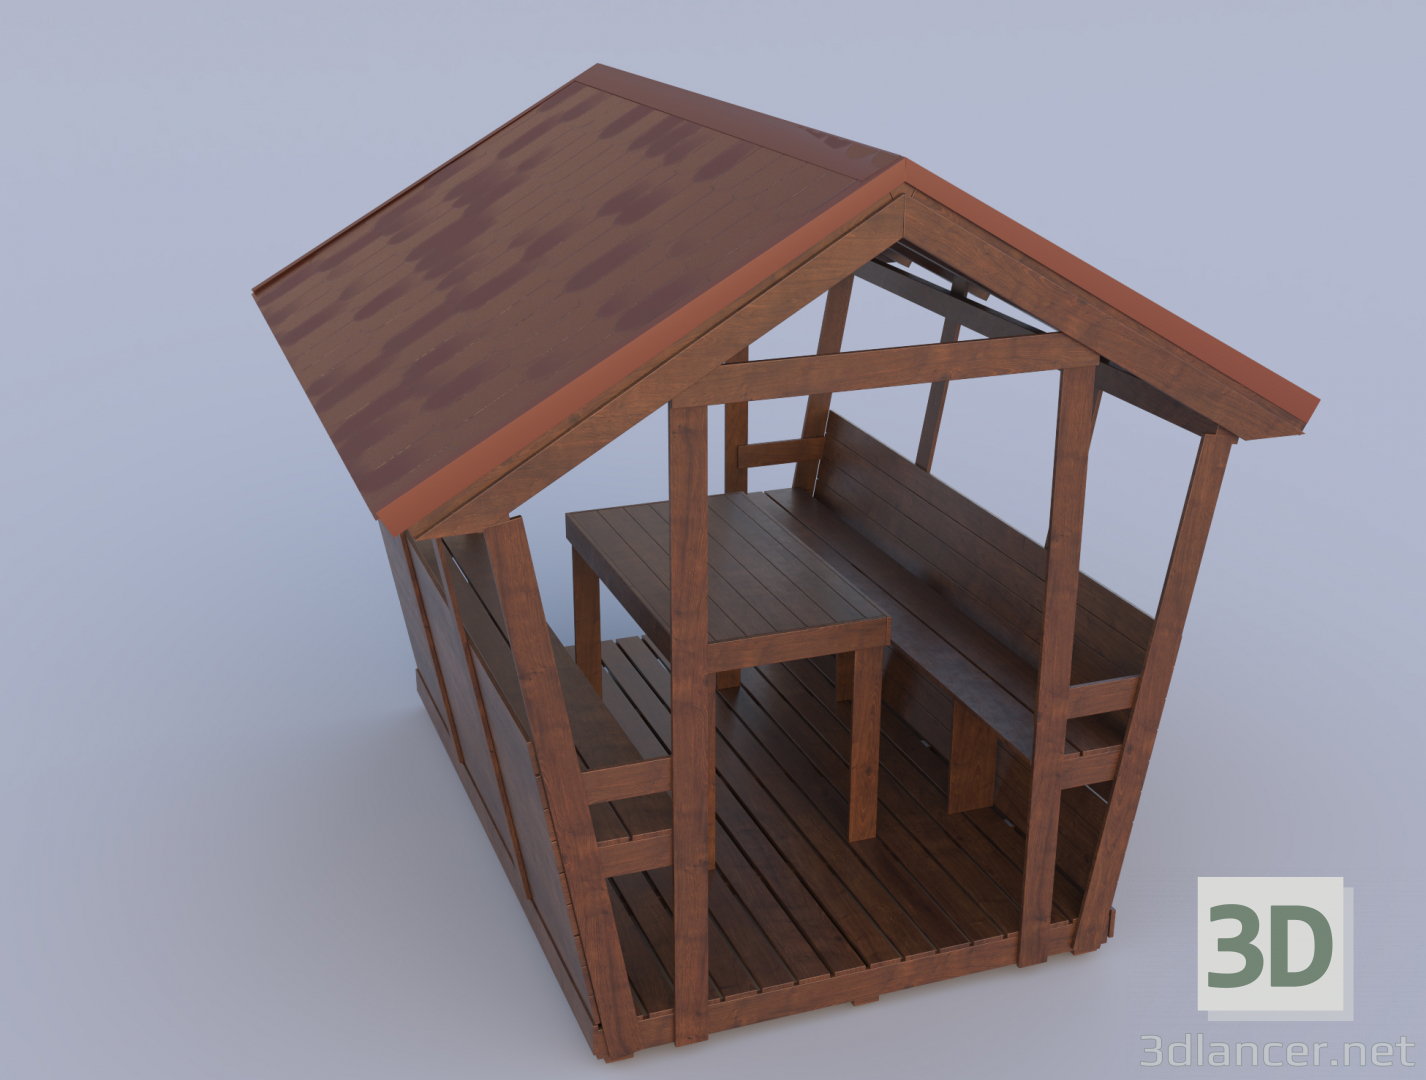 casa de verano 3D modelo Compro - render